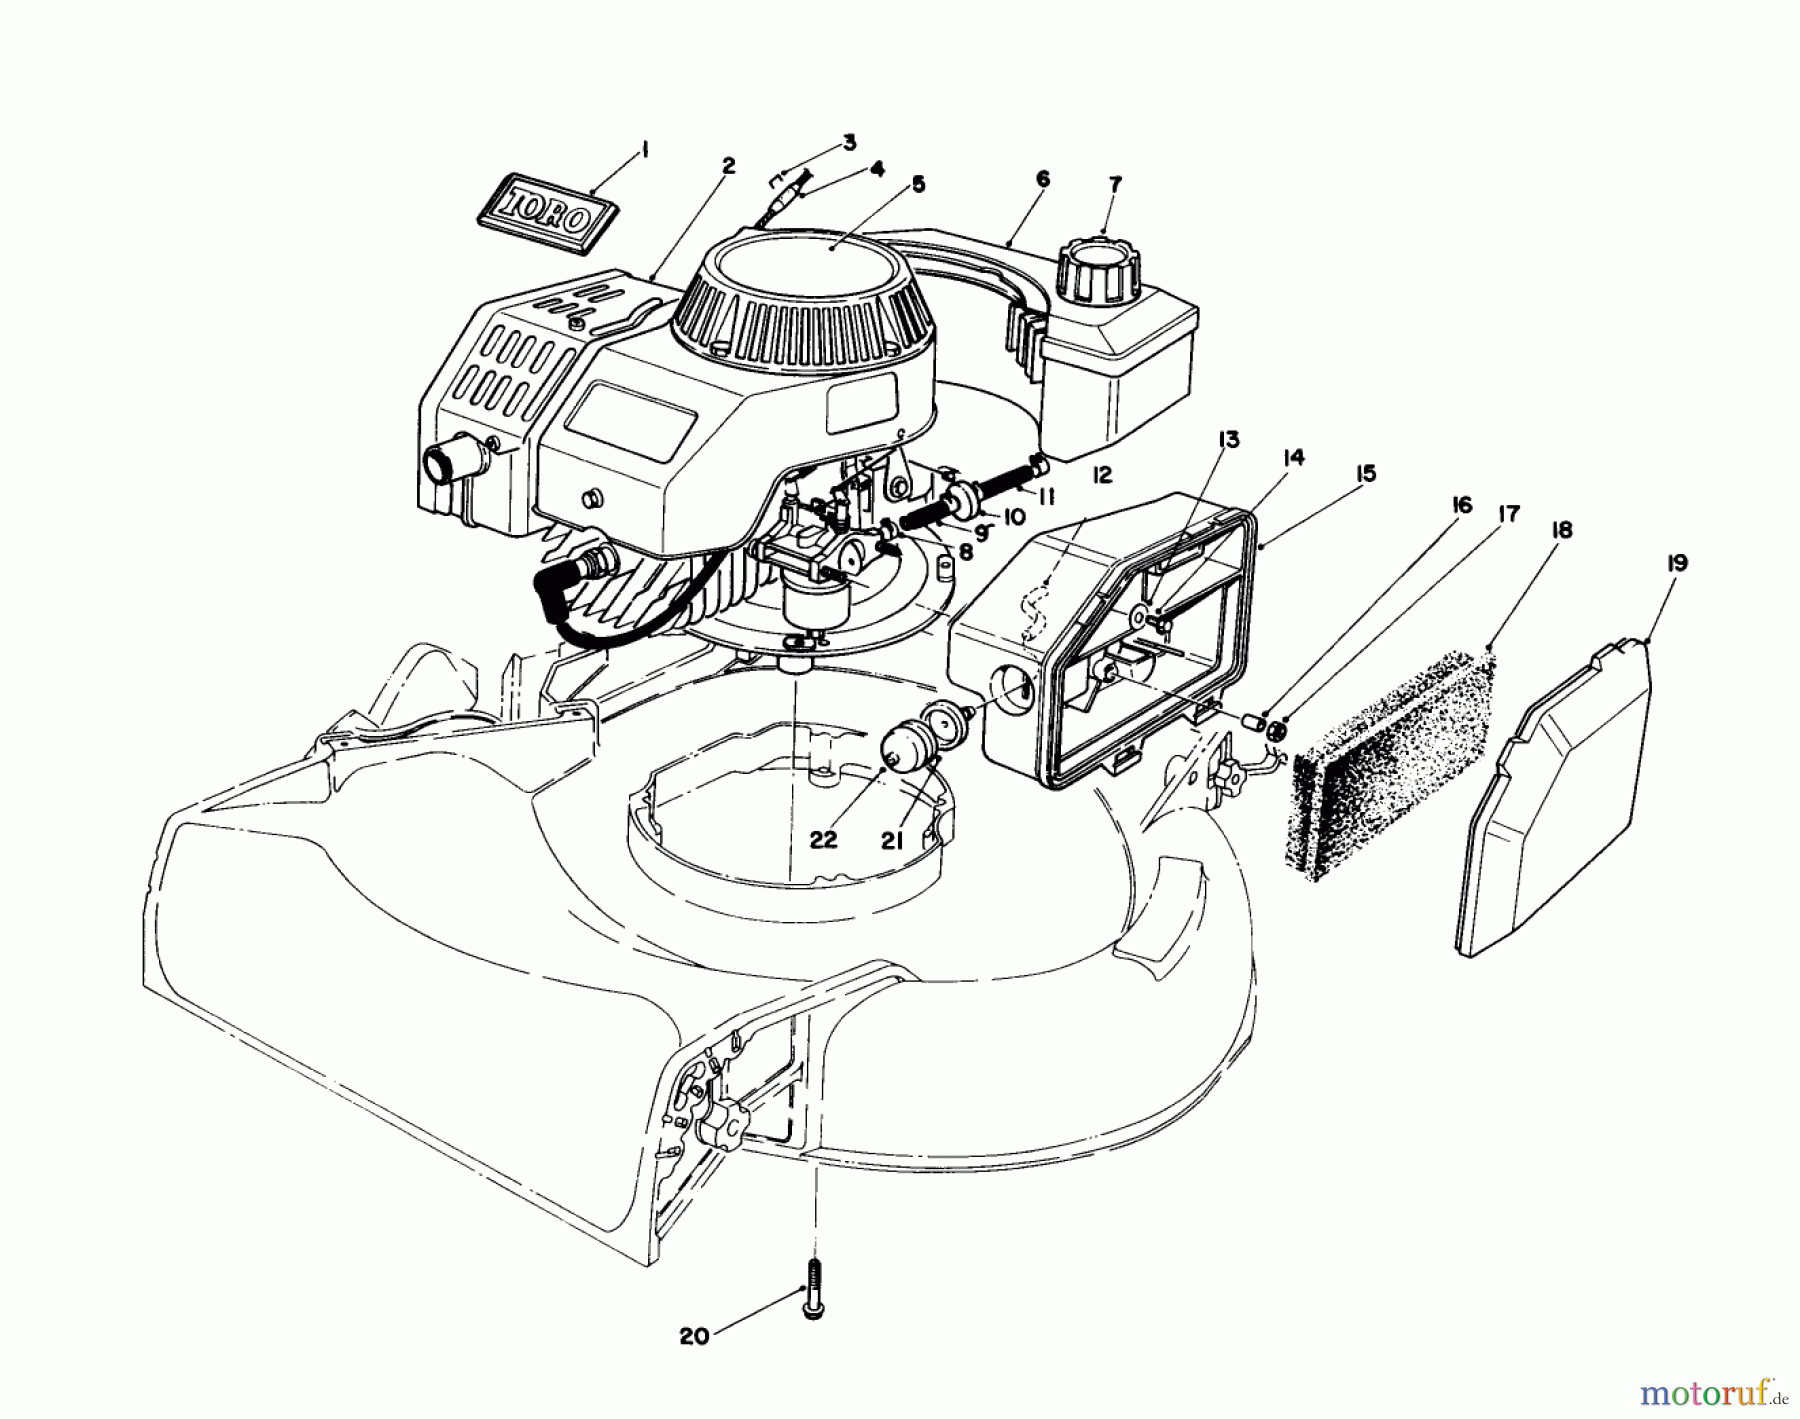  Toro Neu Mowers, Walk-Behind Seite 1 16585 - Toro Lawnmower, 1988 (8000001-8004251) ENGINE ASSEMBLY